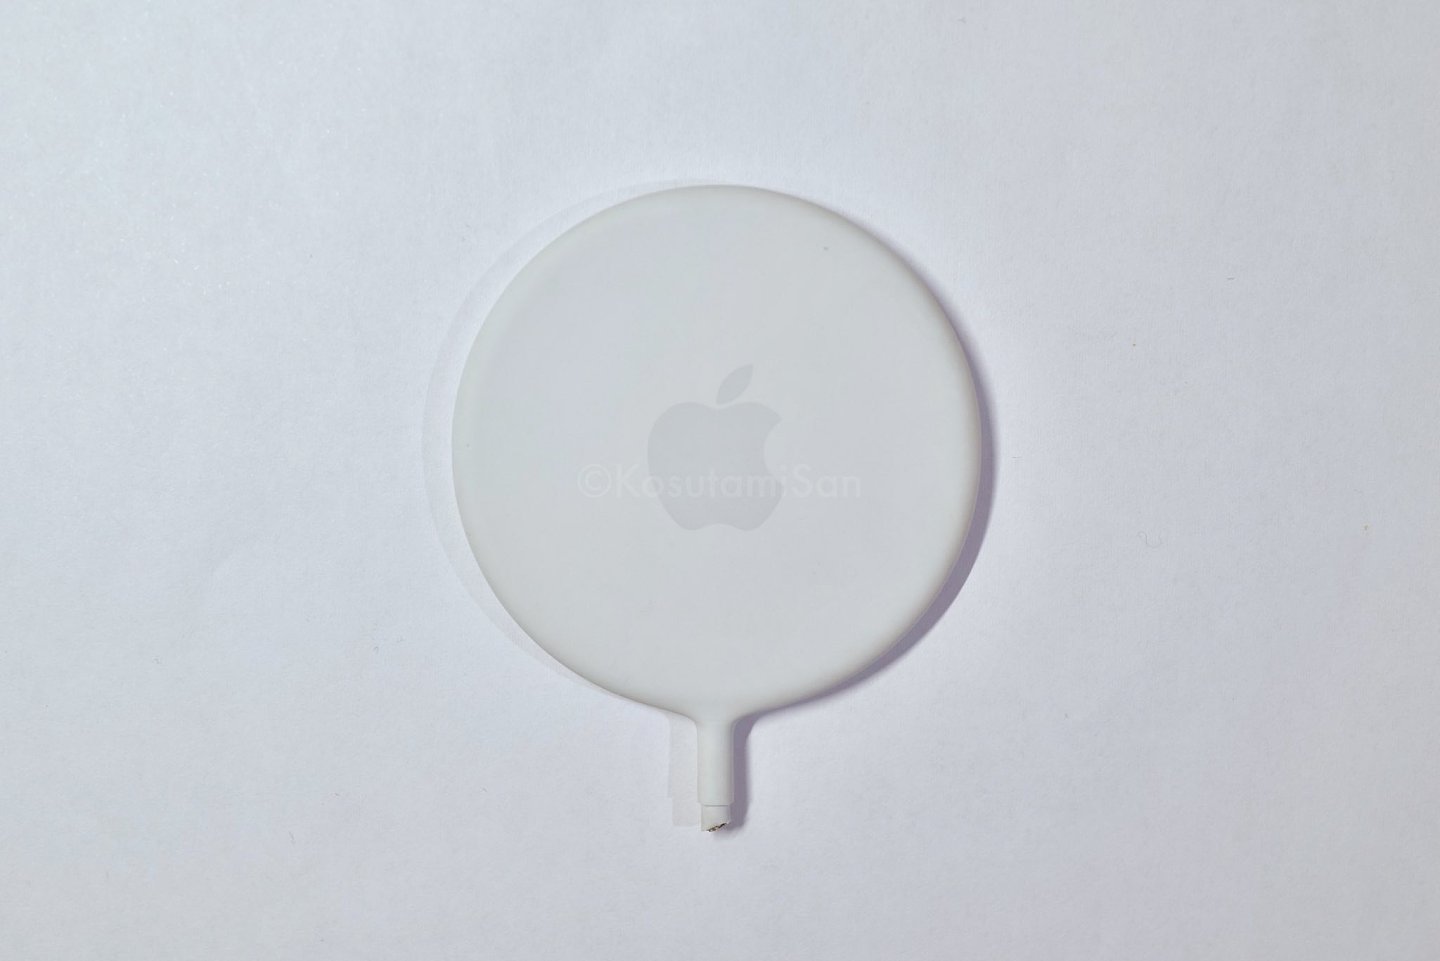 苹果 MagSafe 充电器早期原型曝光：橡胶外壳、Logo 醒目 - 3